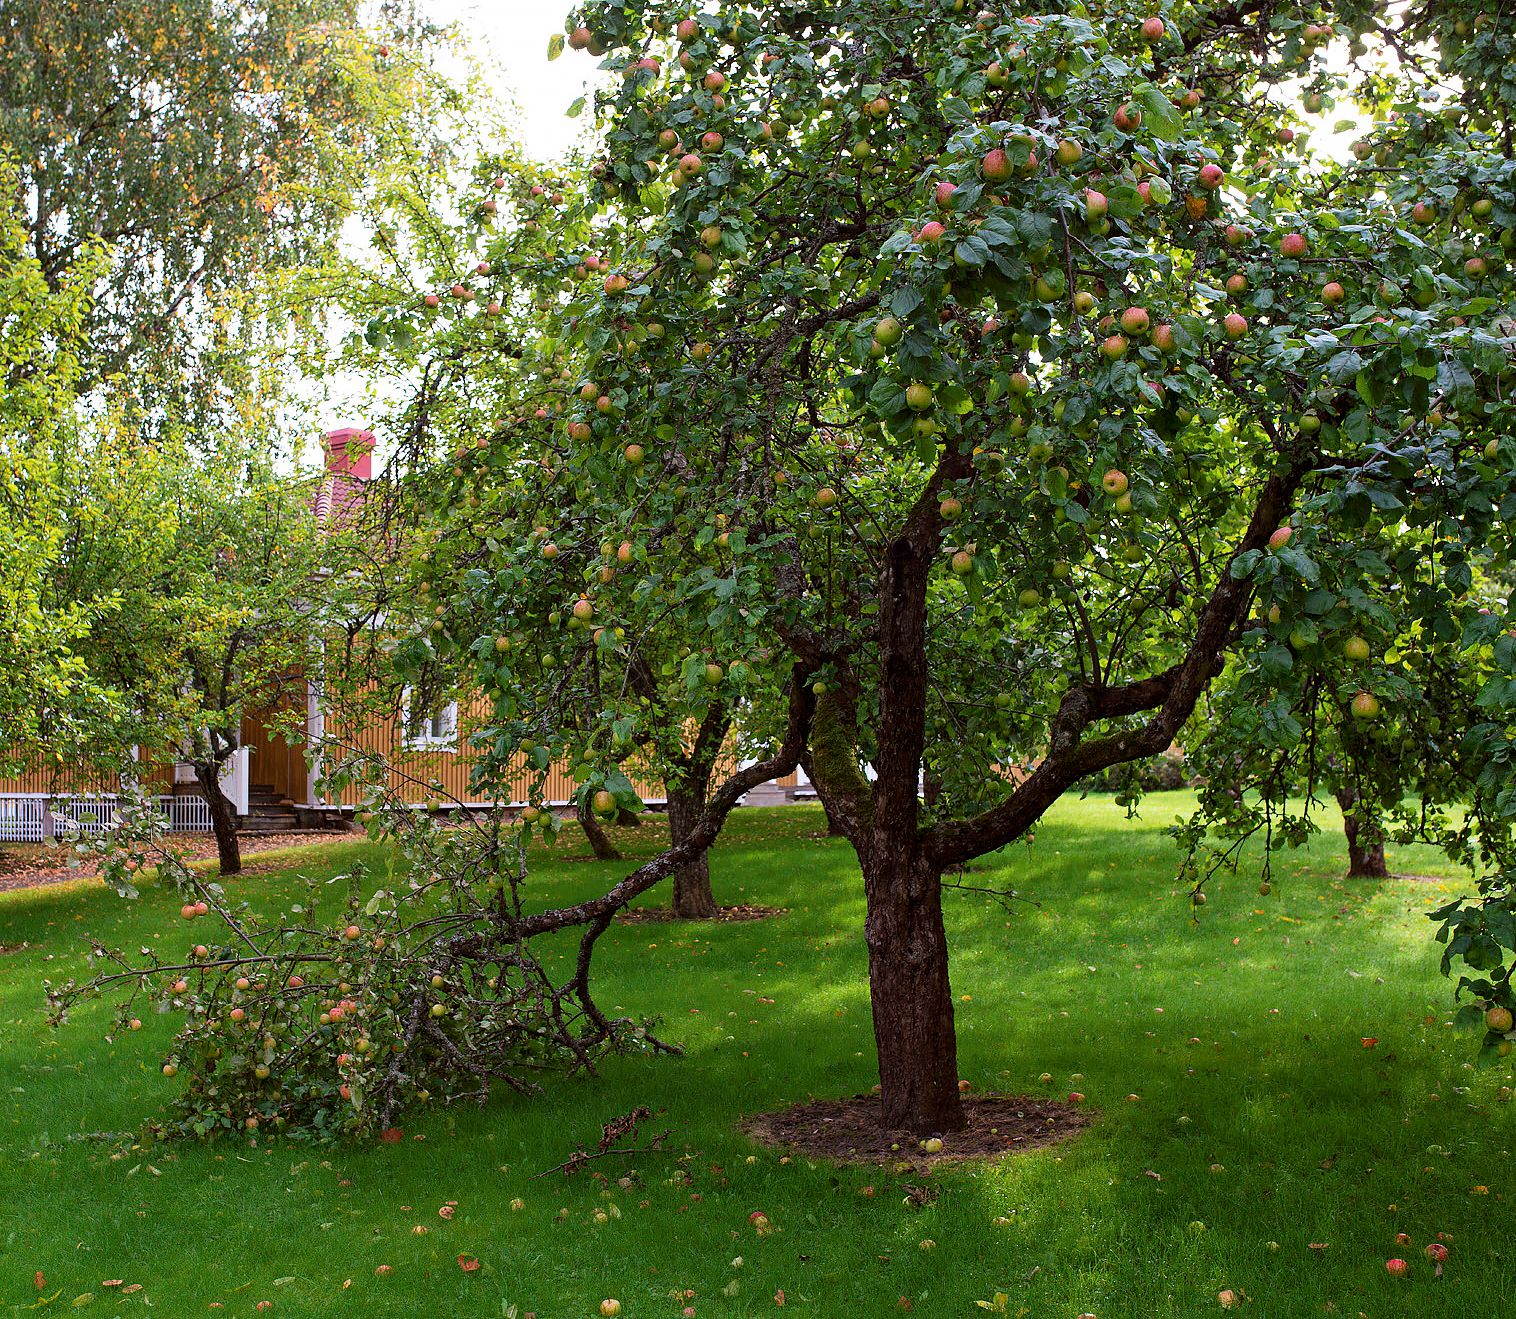 Huvitus oli kuuluisa omenapuutarhastaan. Kartanossa kehitettiin aikanaan myös Huvitus-omenalajike. © Vesa Ranta / Like-kustannus